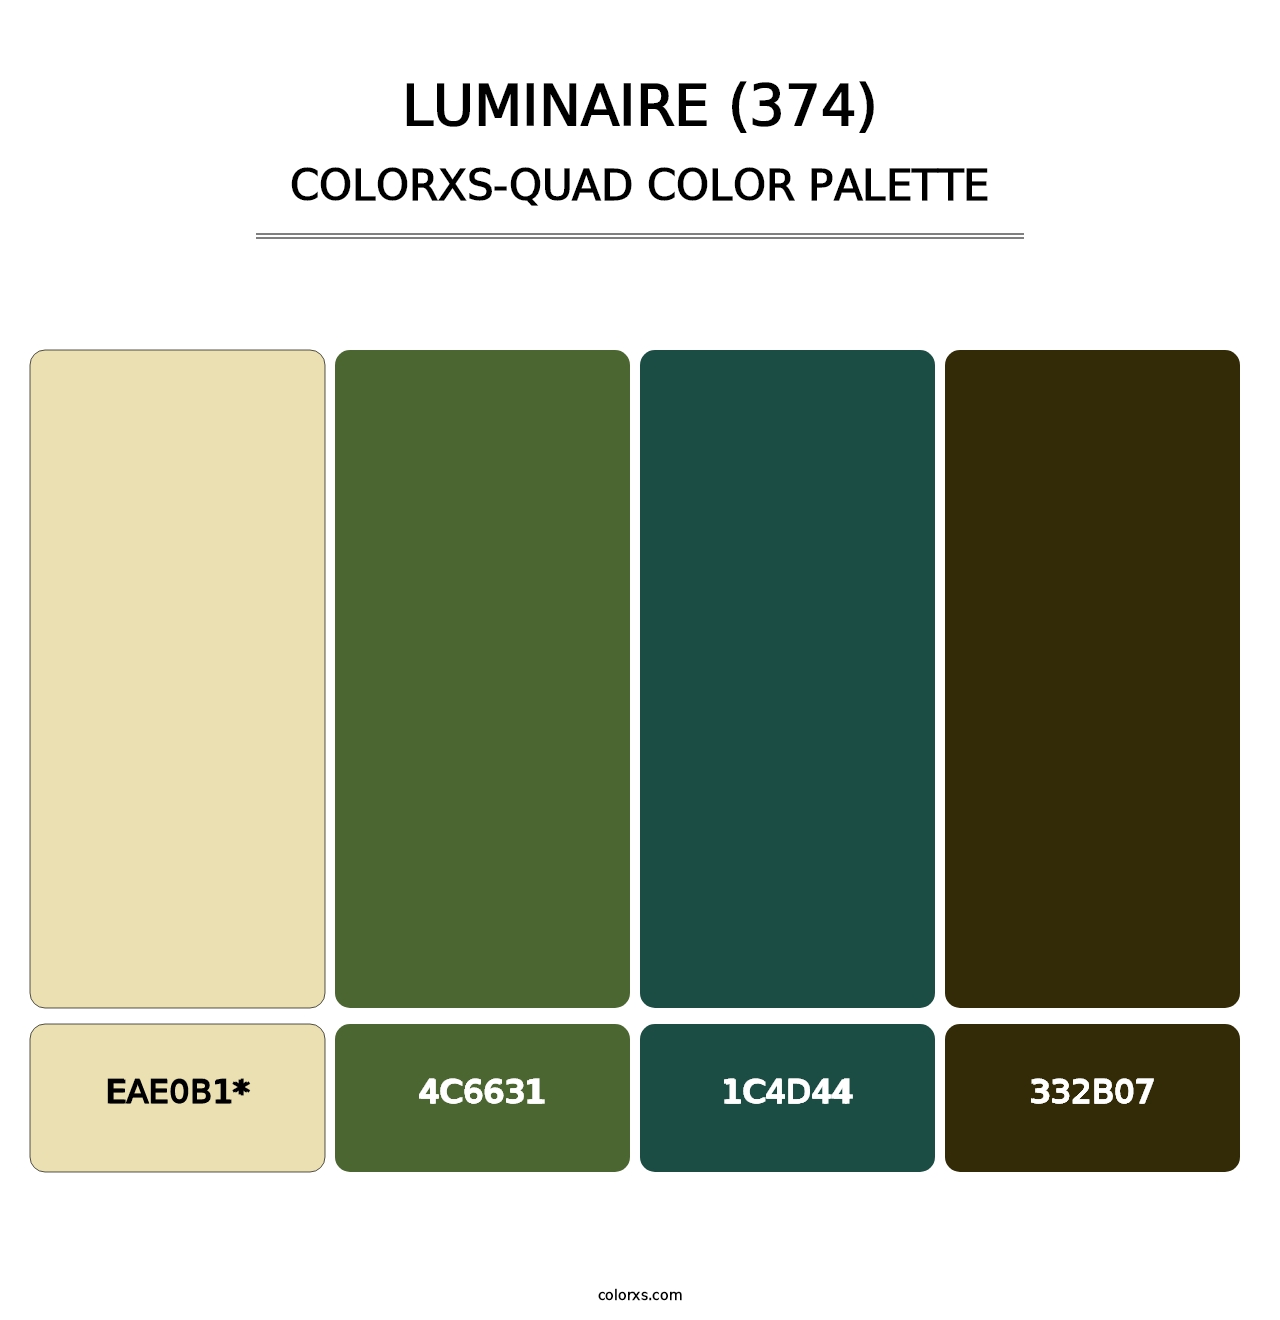 Luminaire (374) - Colorxs Quad Palette